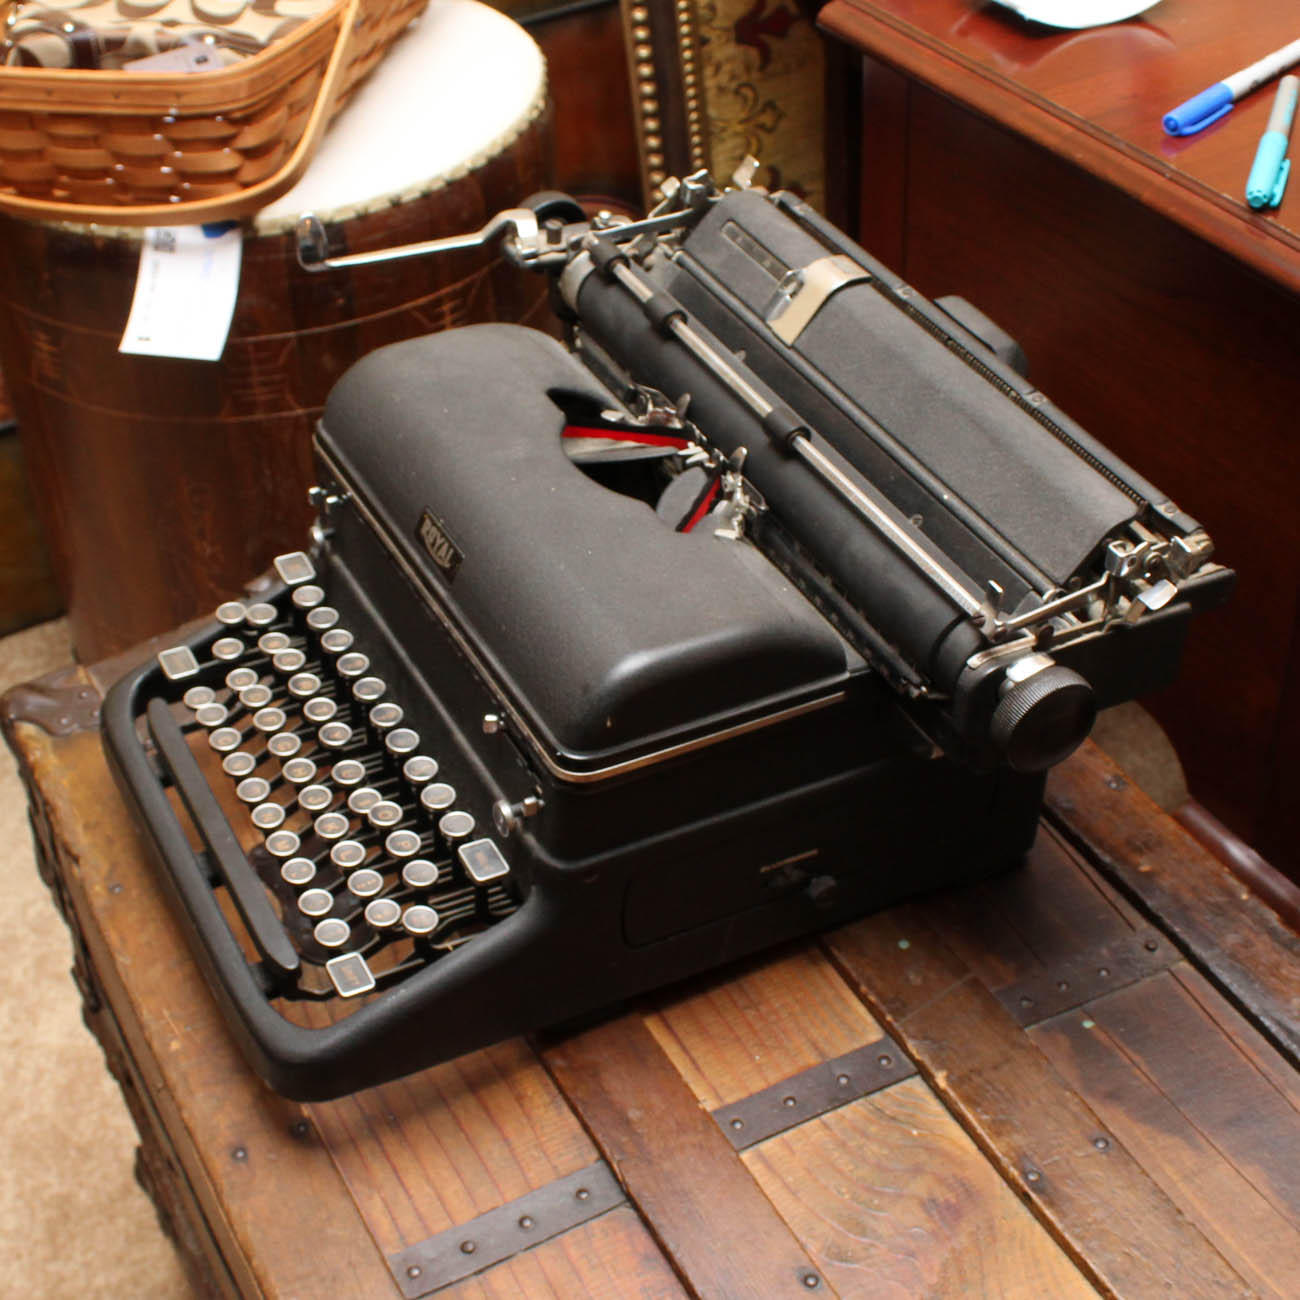 royal book typewriter typeface